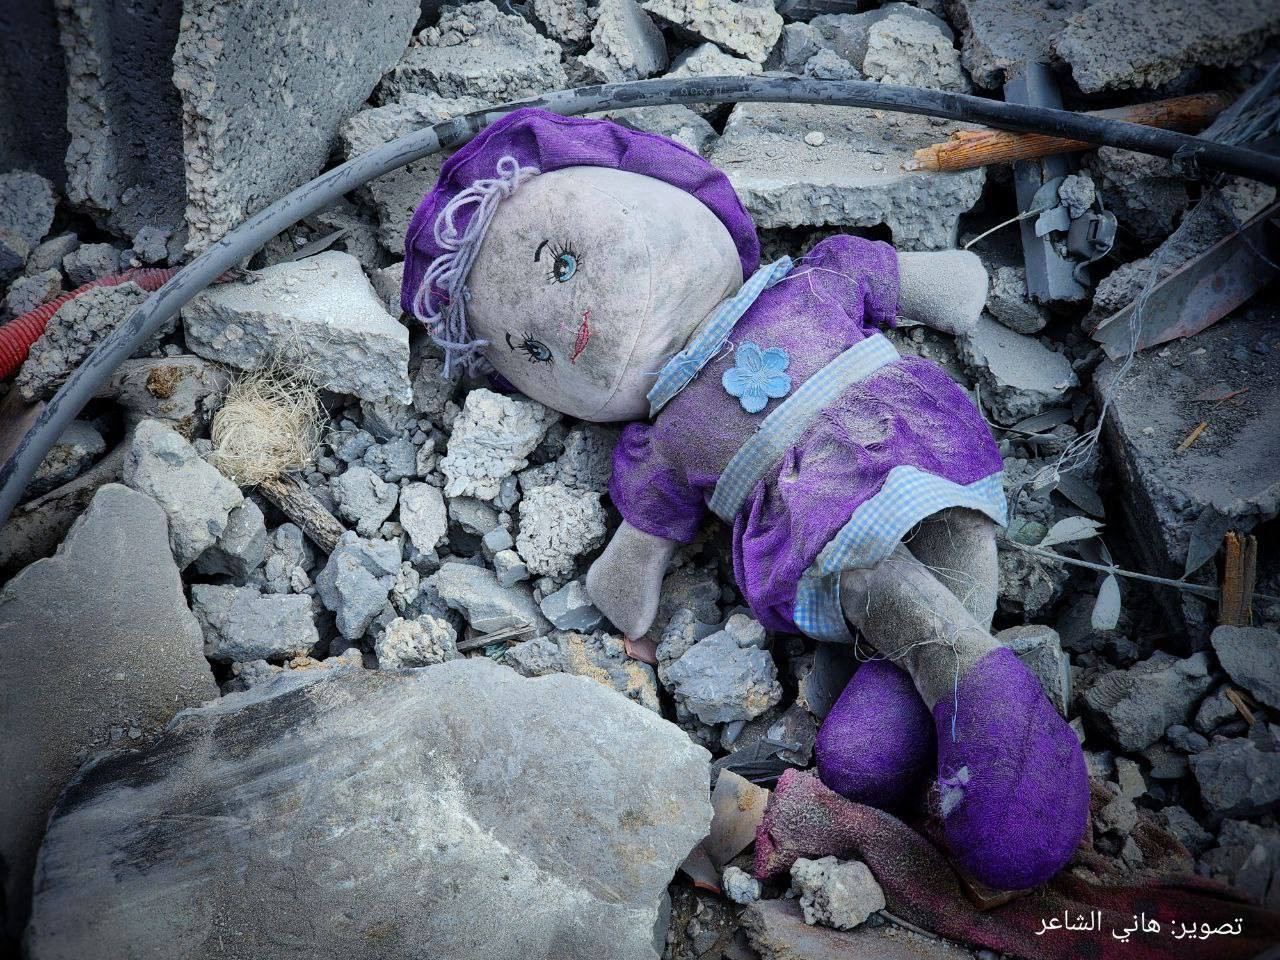 Эксперты ООН осуждают бомбардировки больниц и школ в Газе со стороны Израиля как преступления против человечности и призывают предотвратить геноцид в отношении палестинцев. Фото: Хани эль-Шаэр.